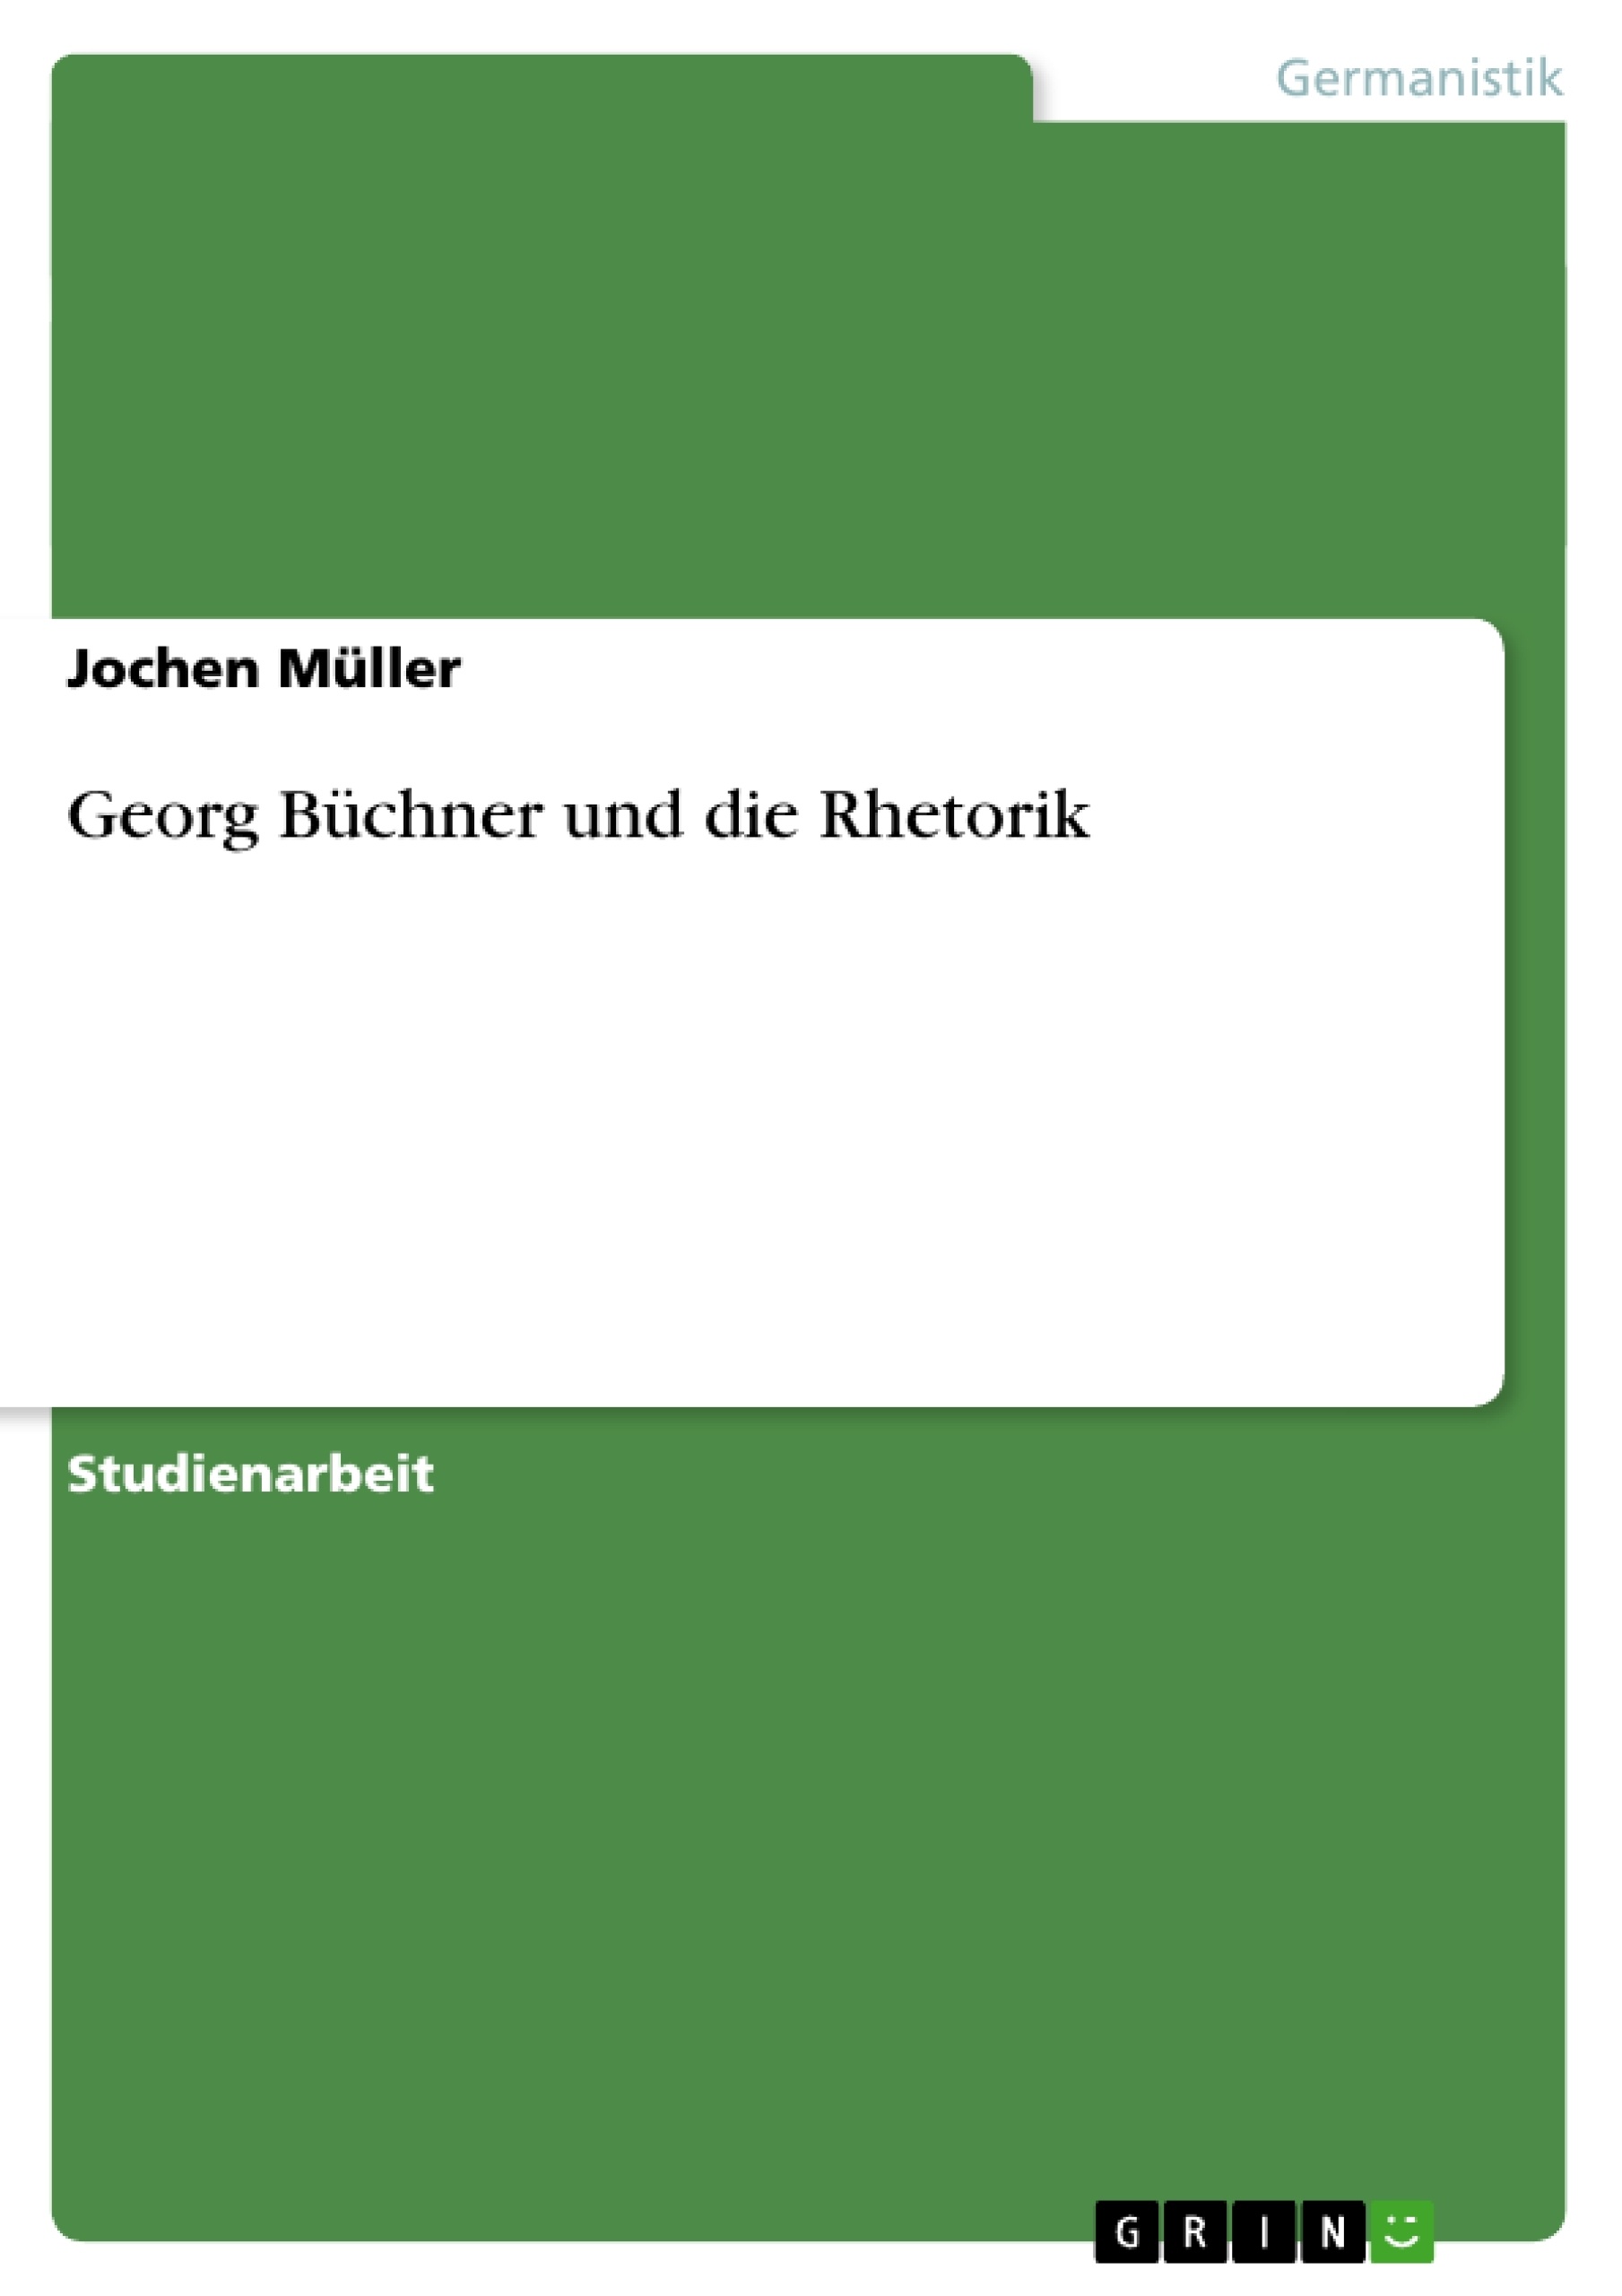 Title: Georg Büchner und die Rhetorik